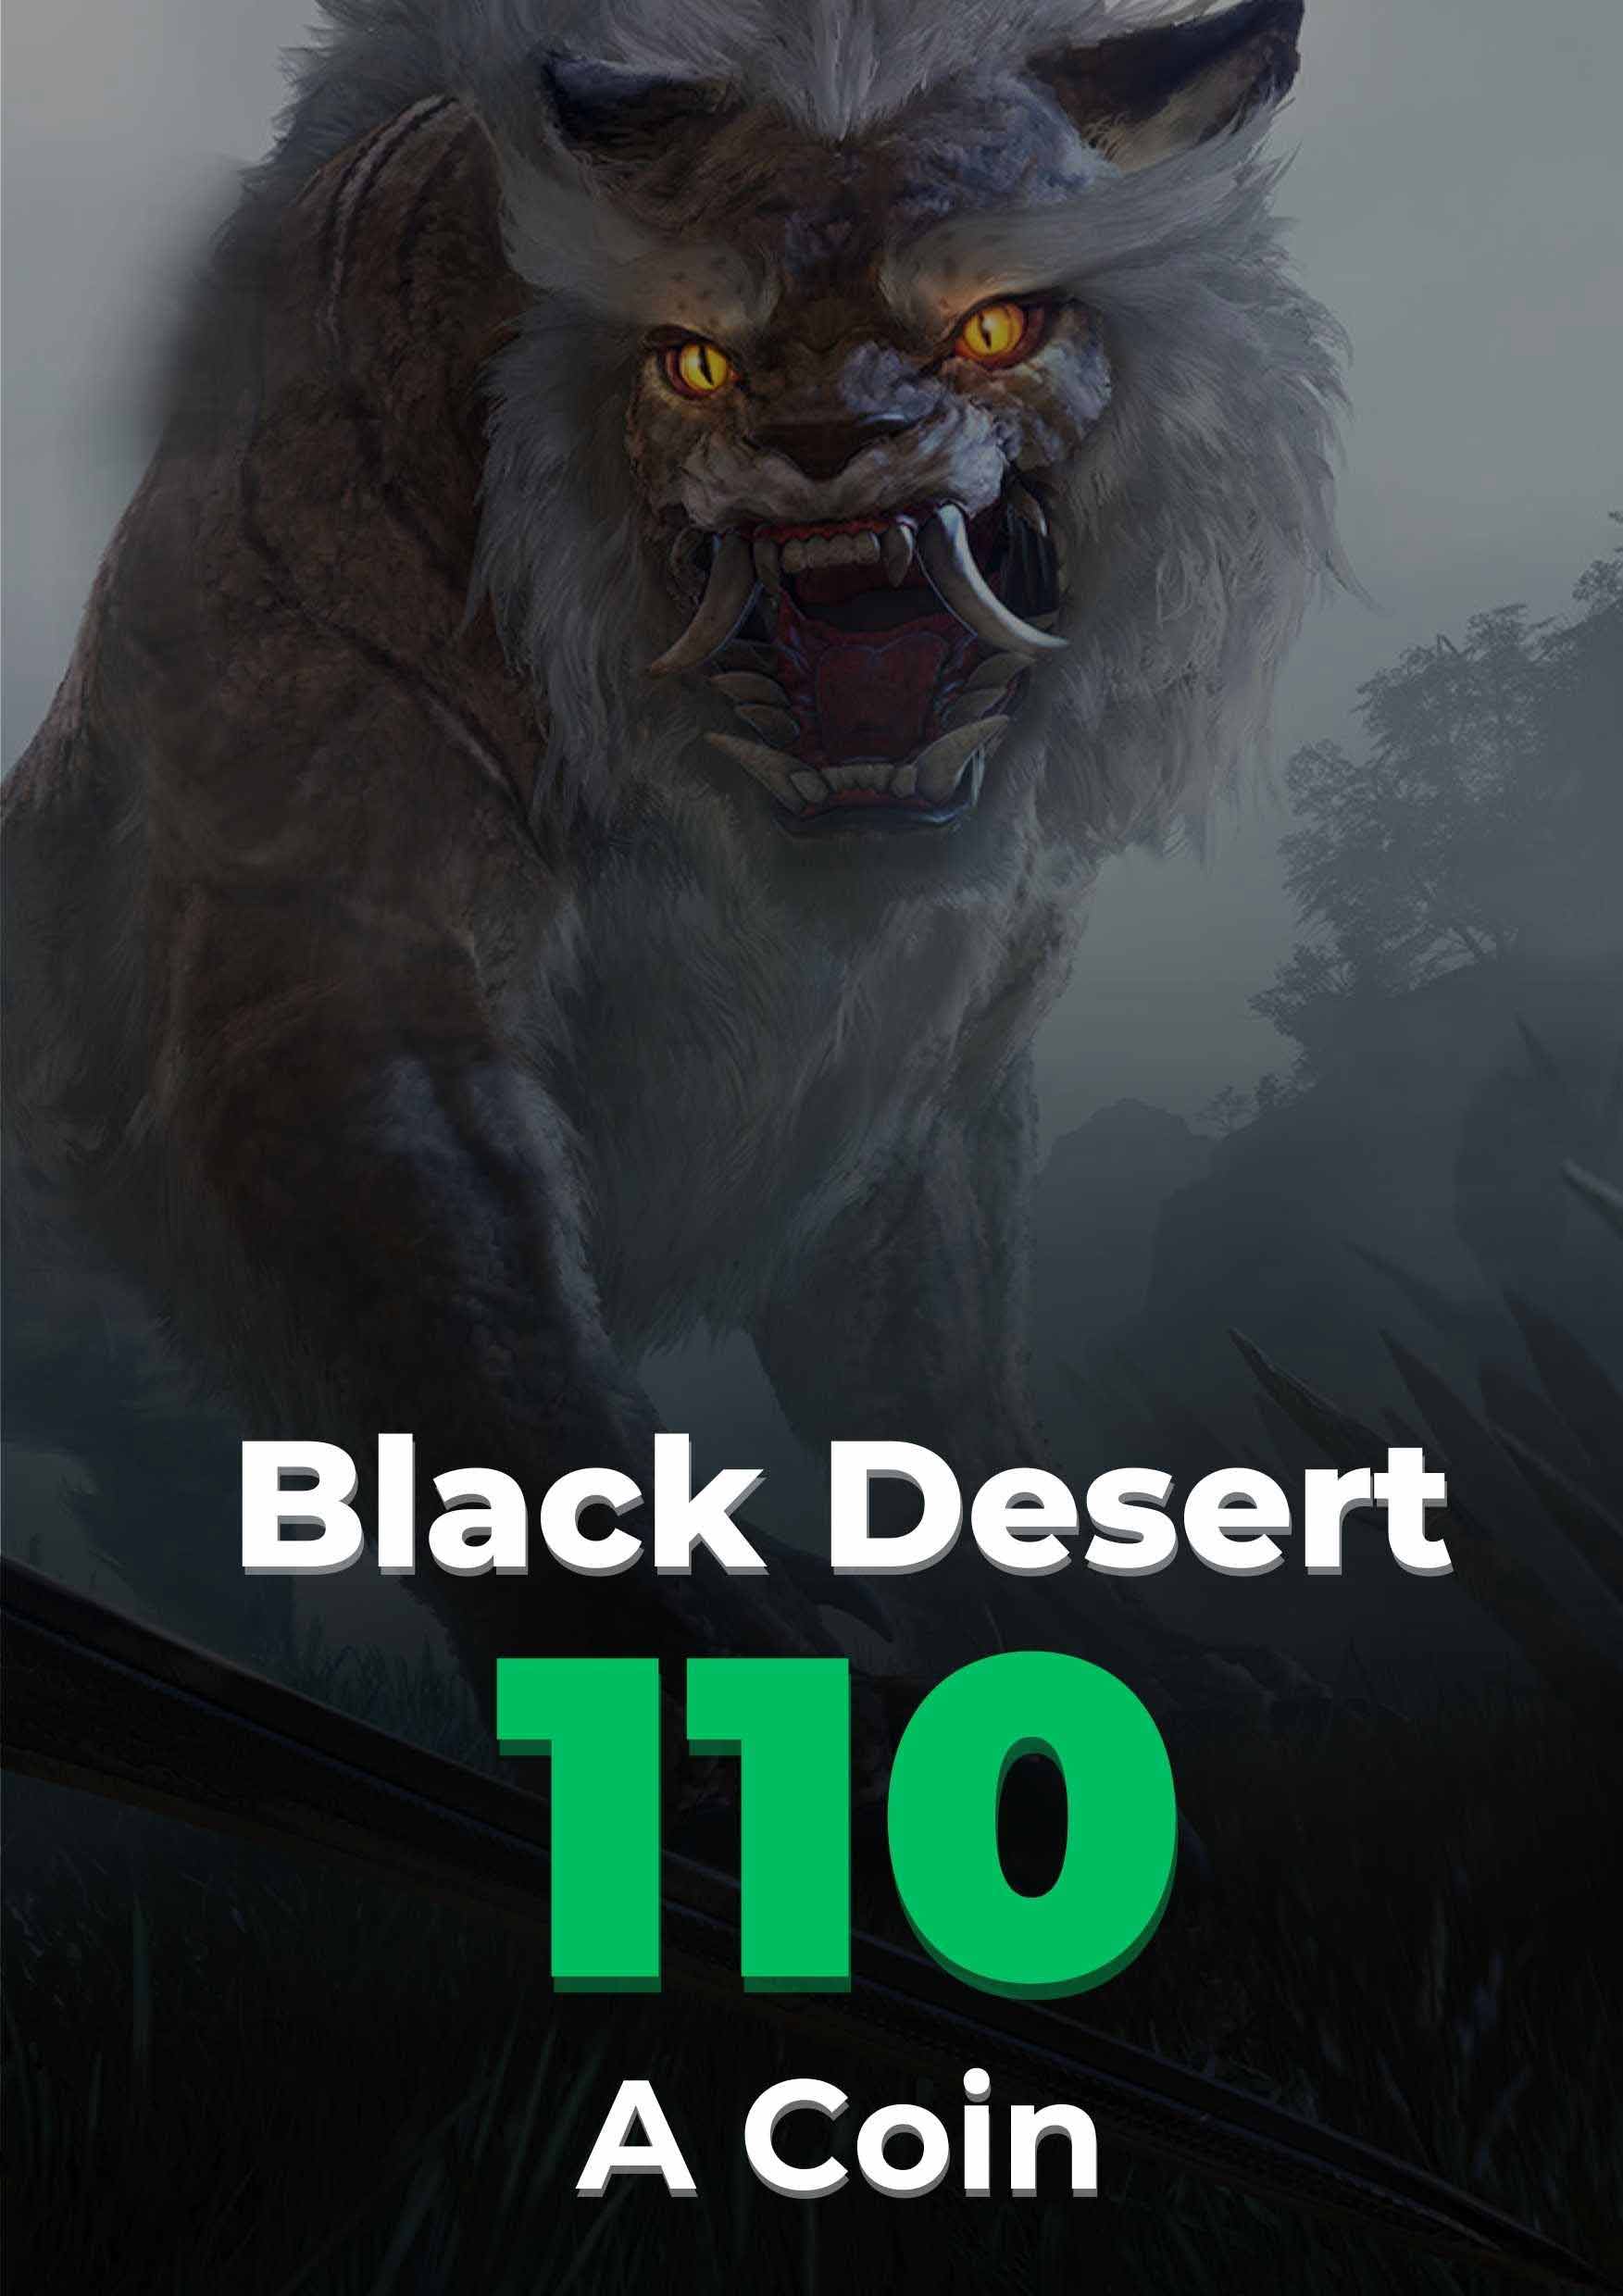 Black Desert 100 + 10 Acoin